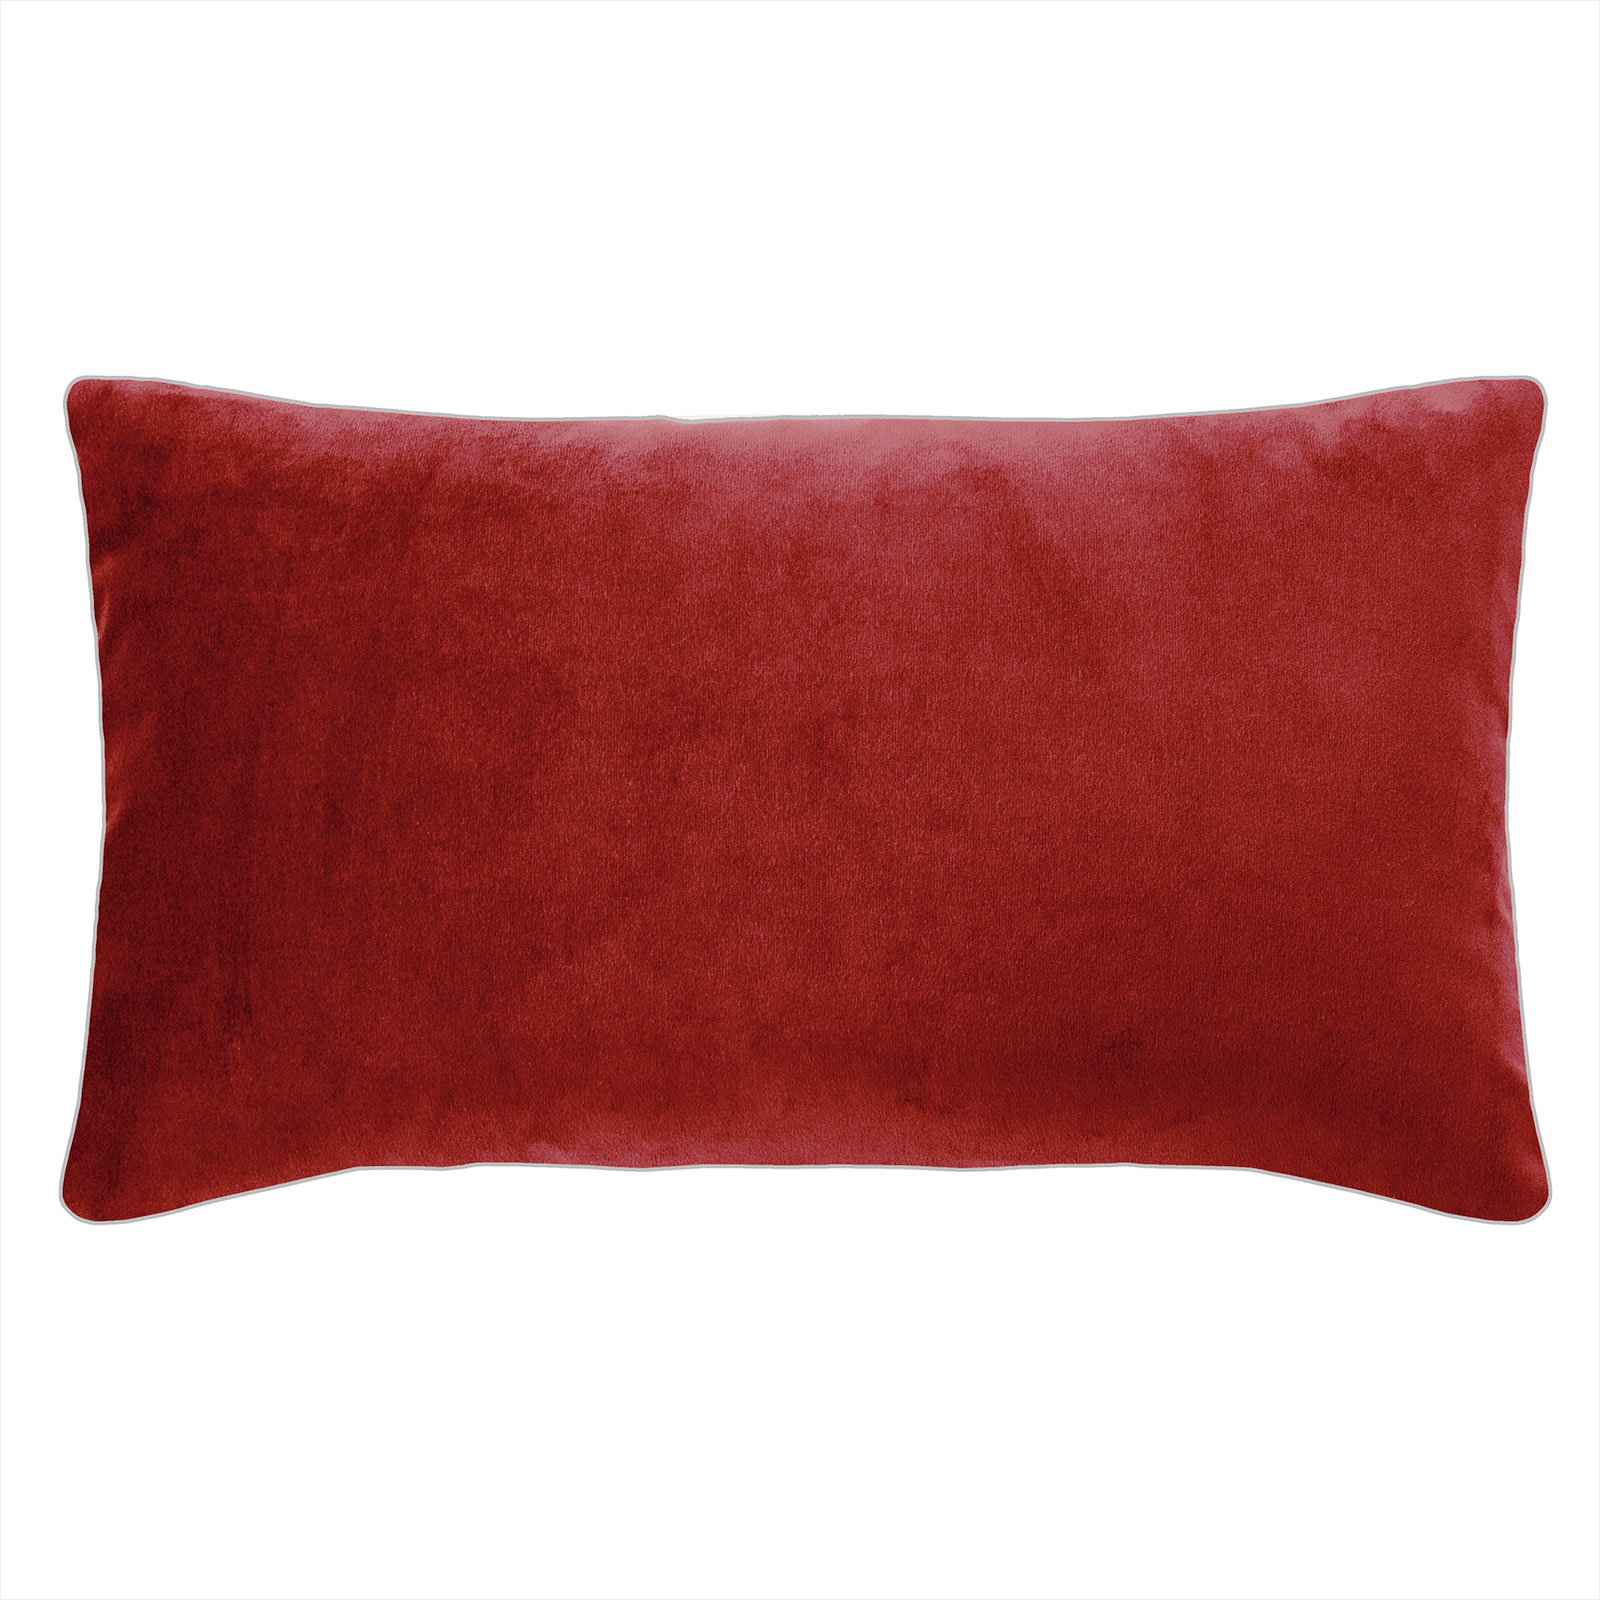 Pad Design Elegance Kissen mit Füllung 35,0x60,0cm red